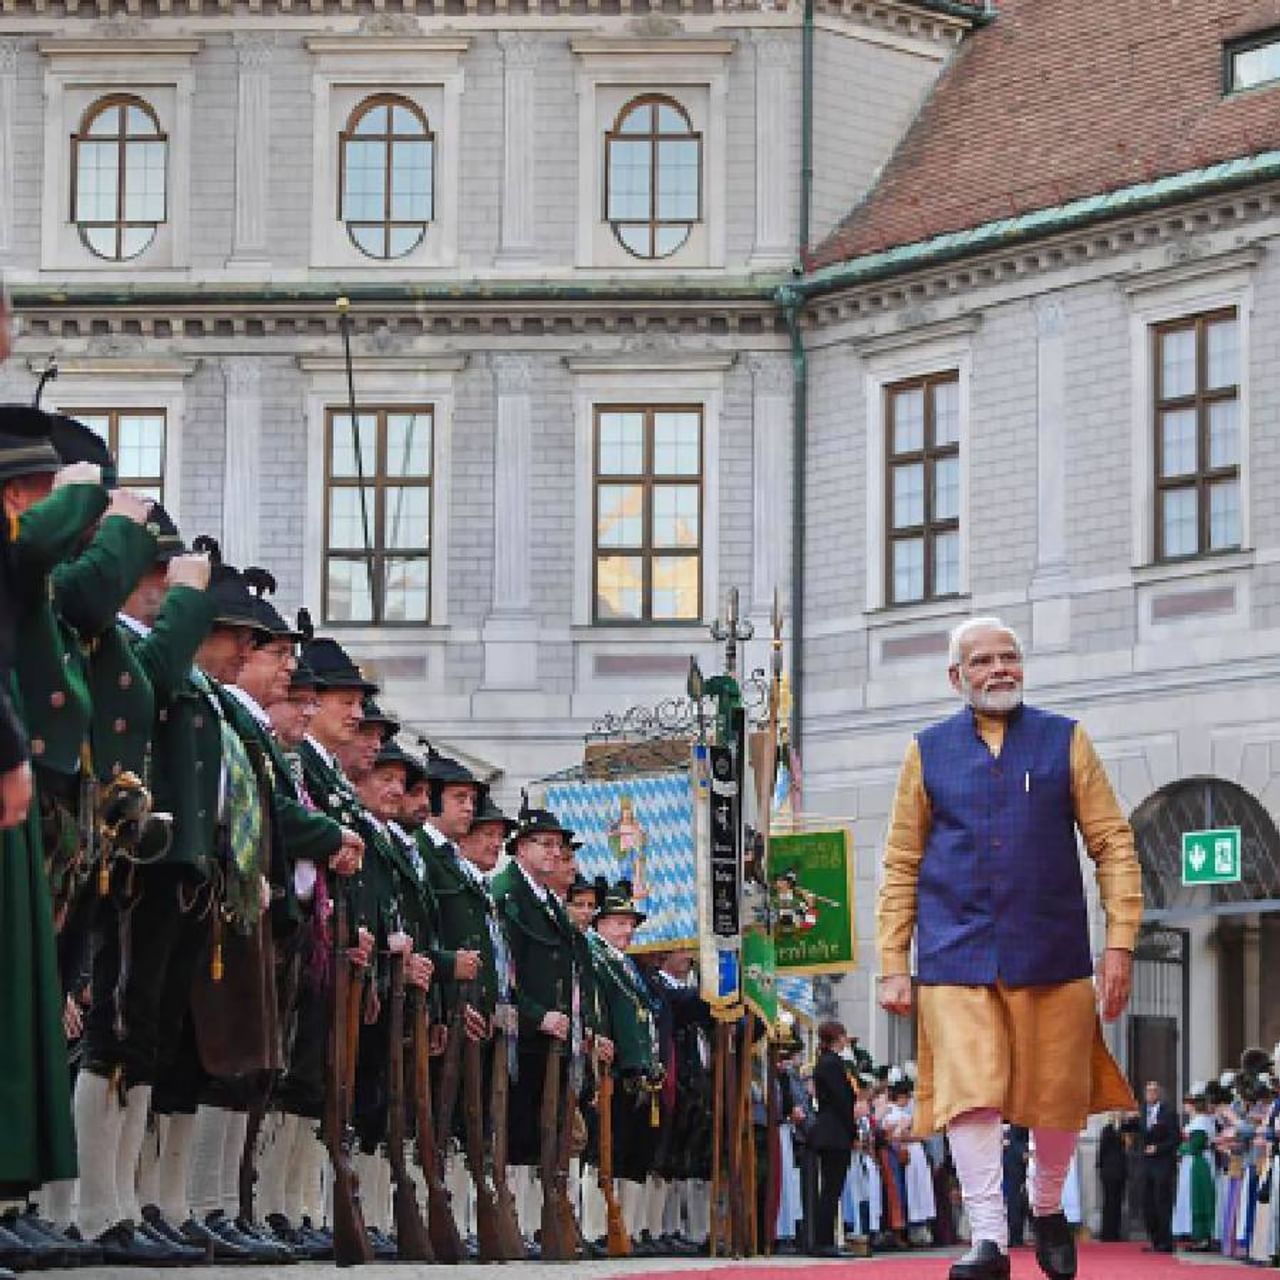 पंतप्रधान नरेंद्र मोदी यांनी जर्मनीतील श्लोस एलमाऊ येथे G-7 शिखर परिषदेला हजेरी लावली आहे.  या परिष पीएम मोदींनी अनेक जागतिक नेत्यांची भेट घेतली आणि त्यानंतर शिखर परिषदेच्या पहिल्या सत्राला संबोधित केले.
